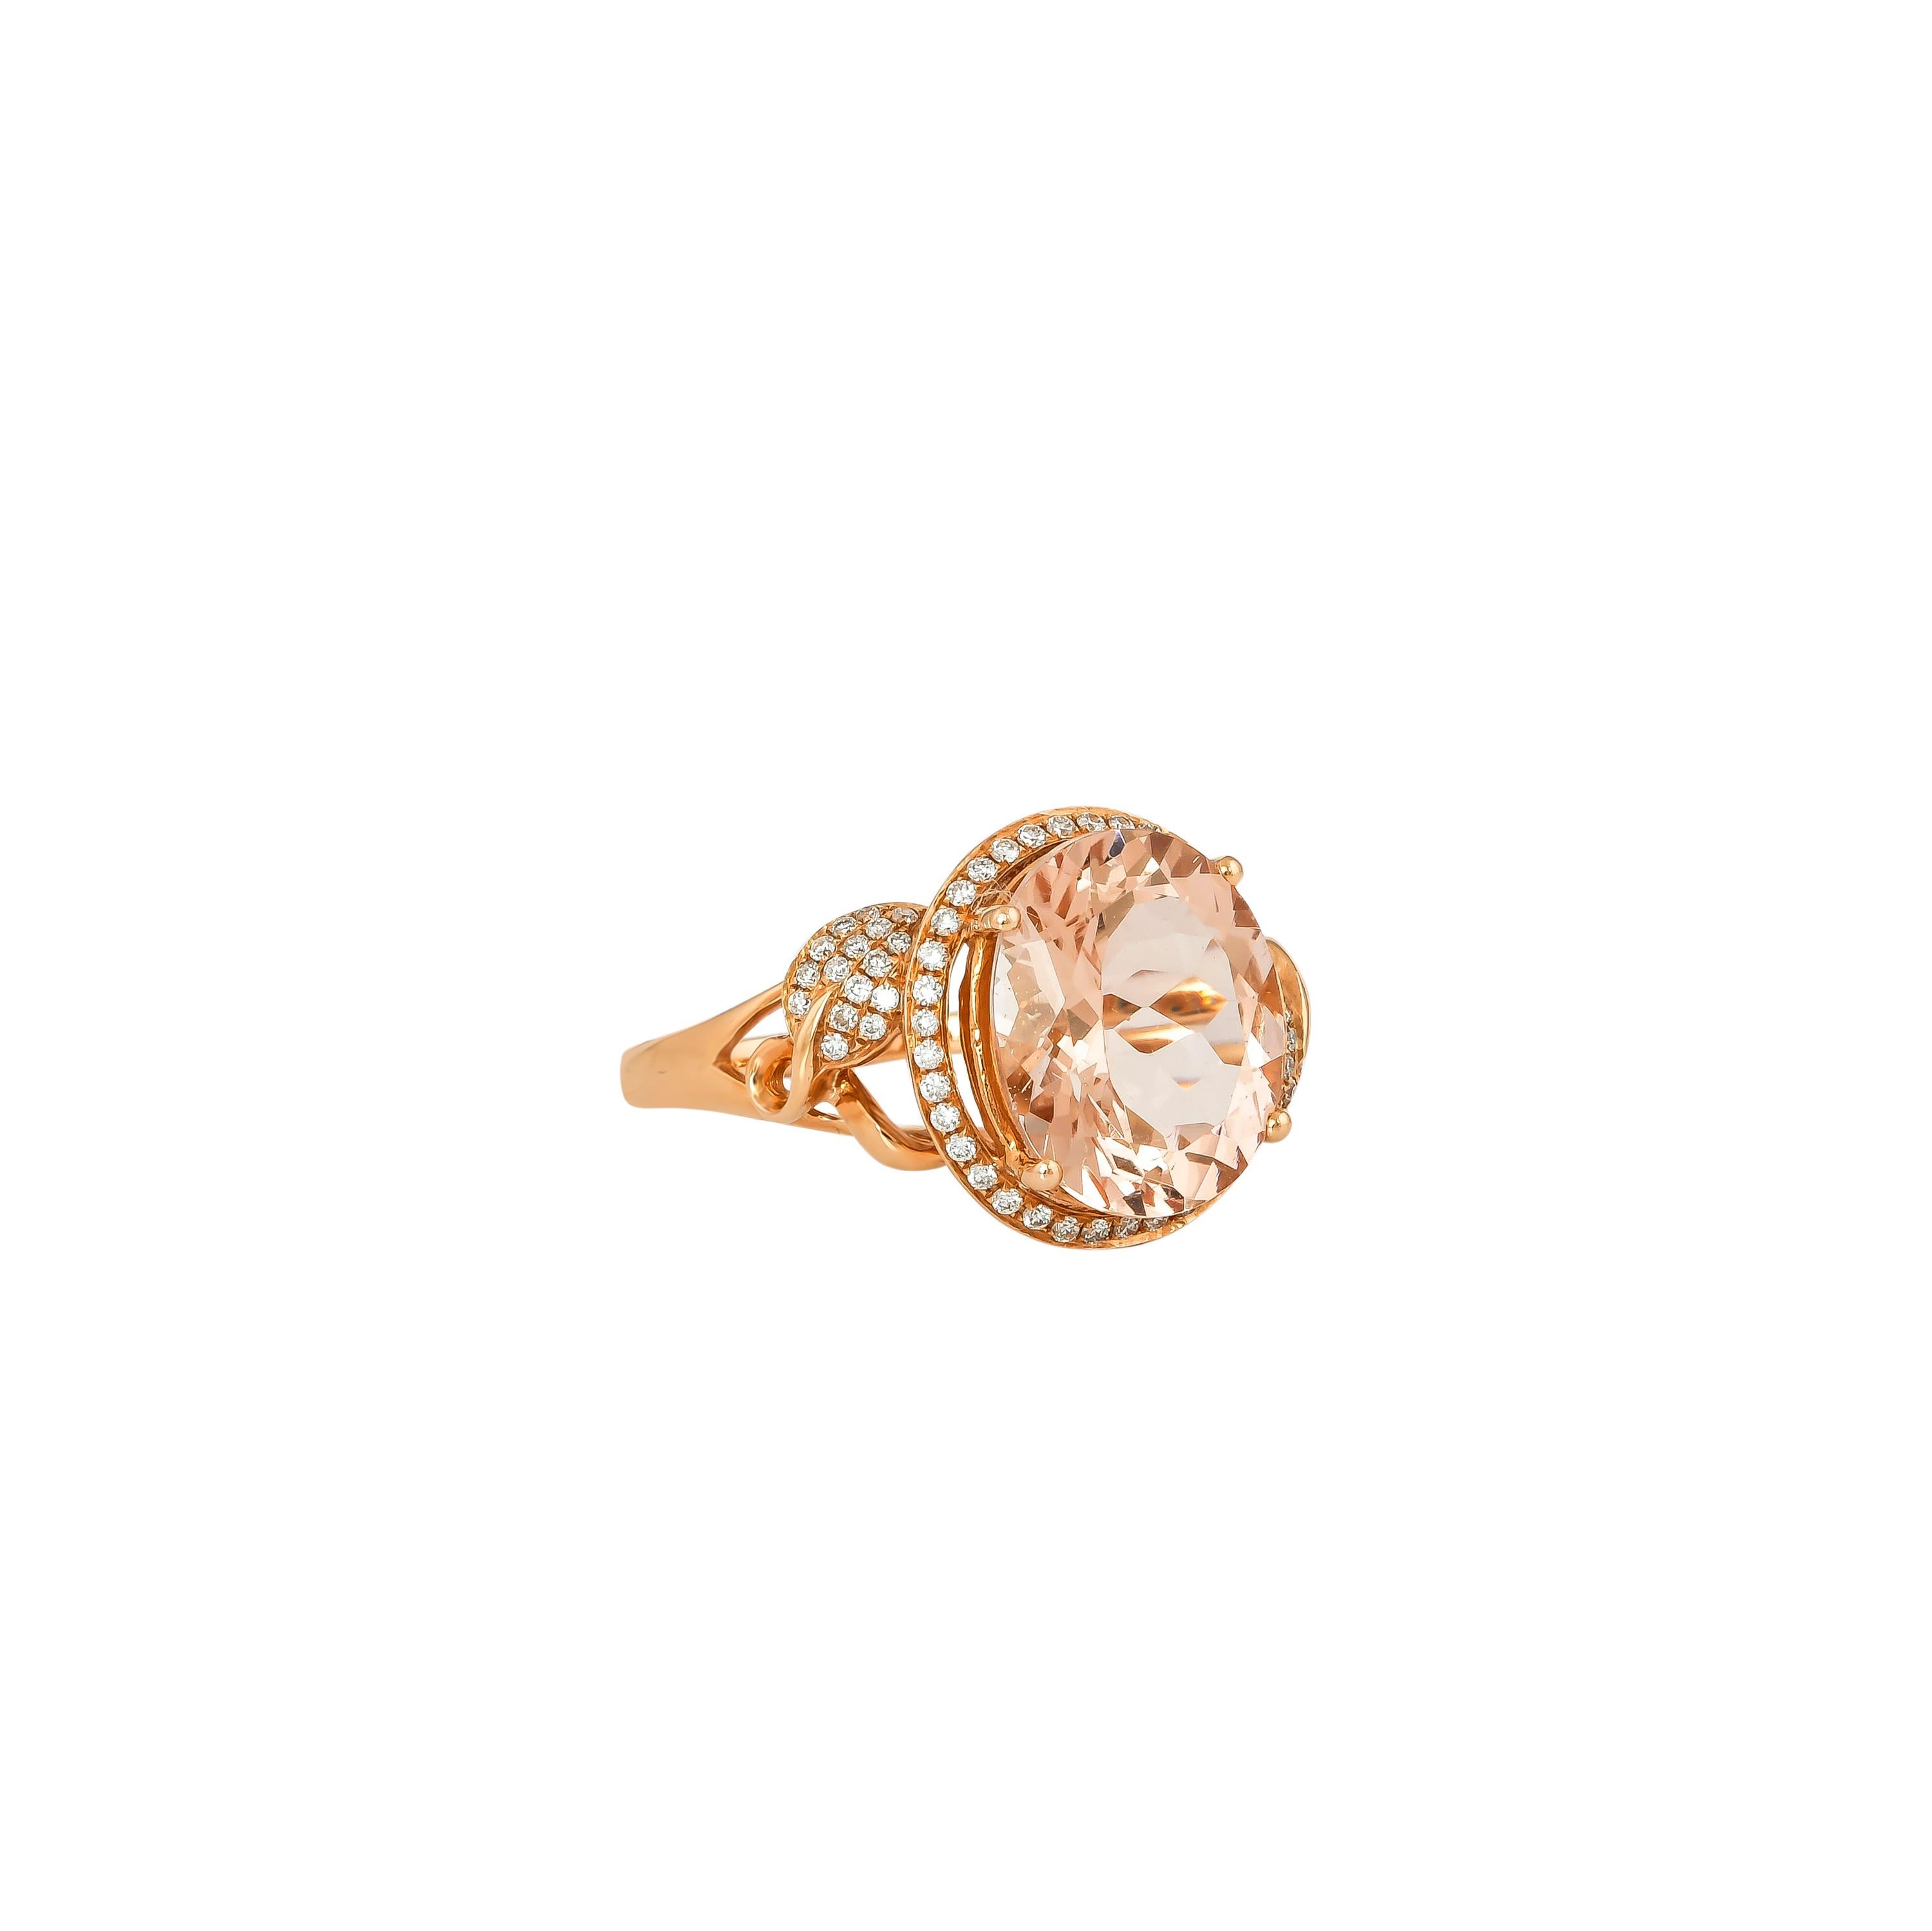 Diese Kollektion bietet eine Reihe von prächtigen Morganiten! Die mit Diamanten besetzten Ringe sind aus Roségold gefertigt und wirken klassisch und elegant. 

Klassischer Morganit-Ring aus 18 Karat Roségold mit Diamanten. 

Morganit: 4.17 Karat in